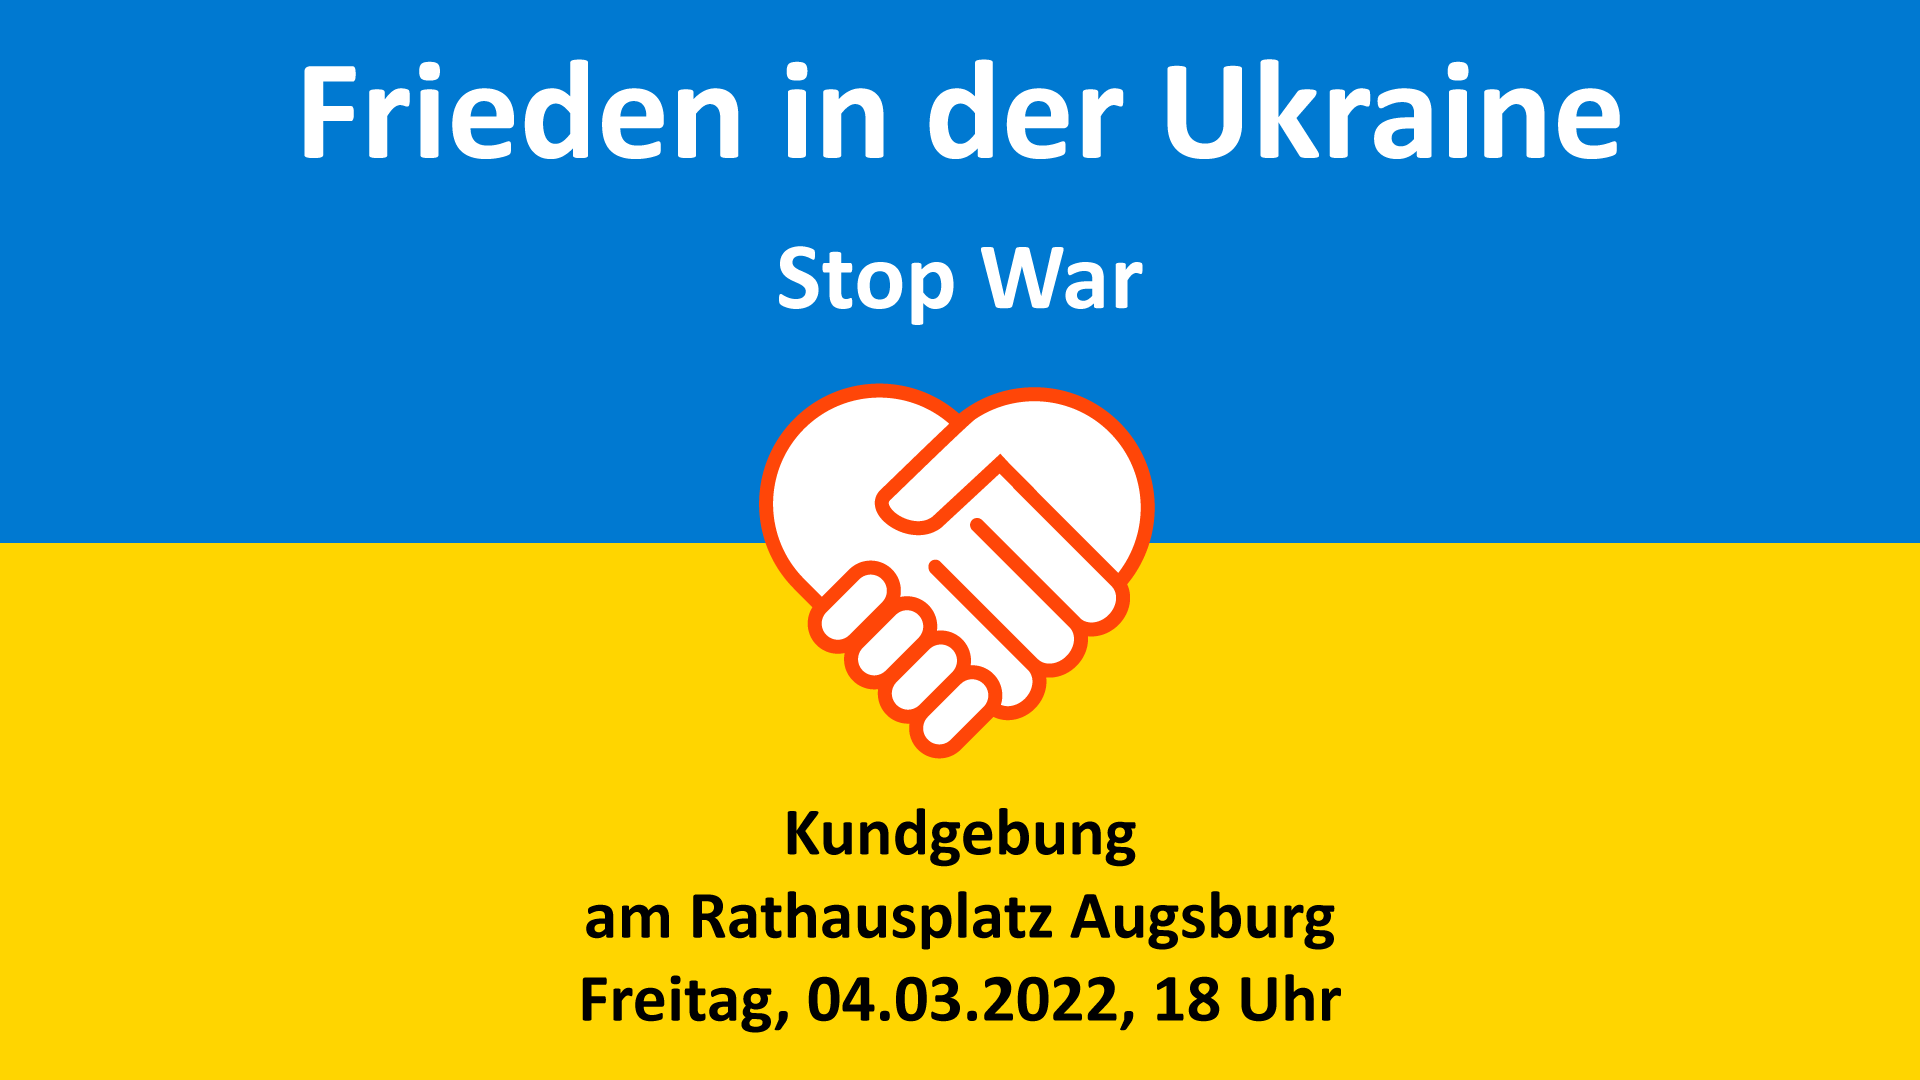 Augsburg, Friede in der Ukraine, Kundgebung.